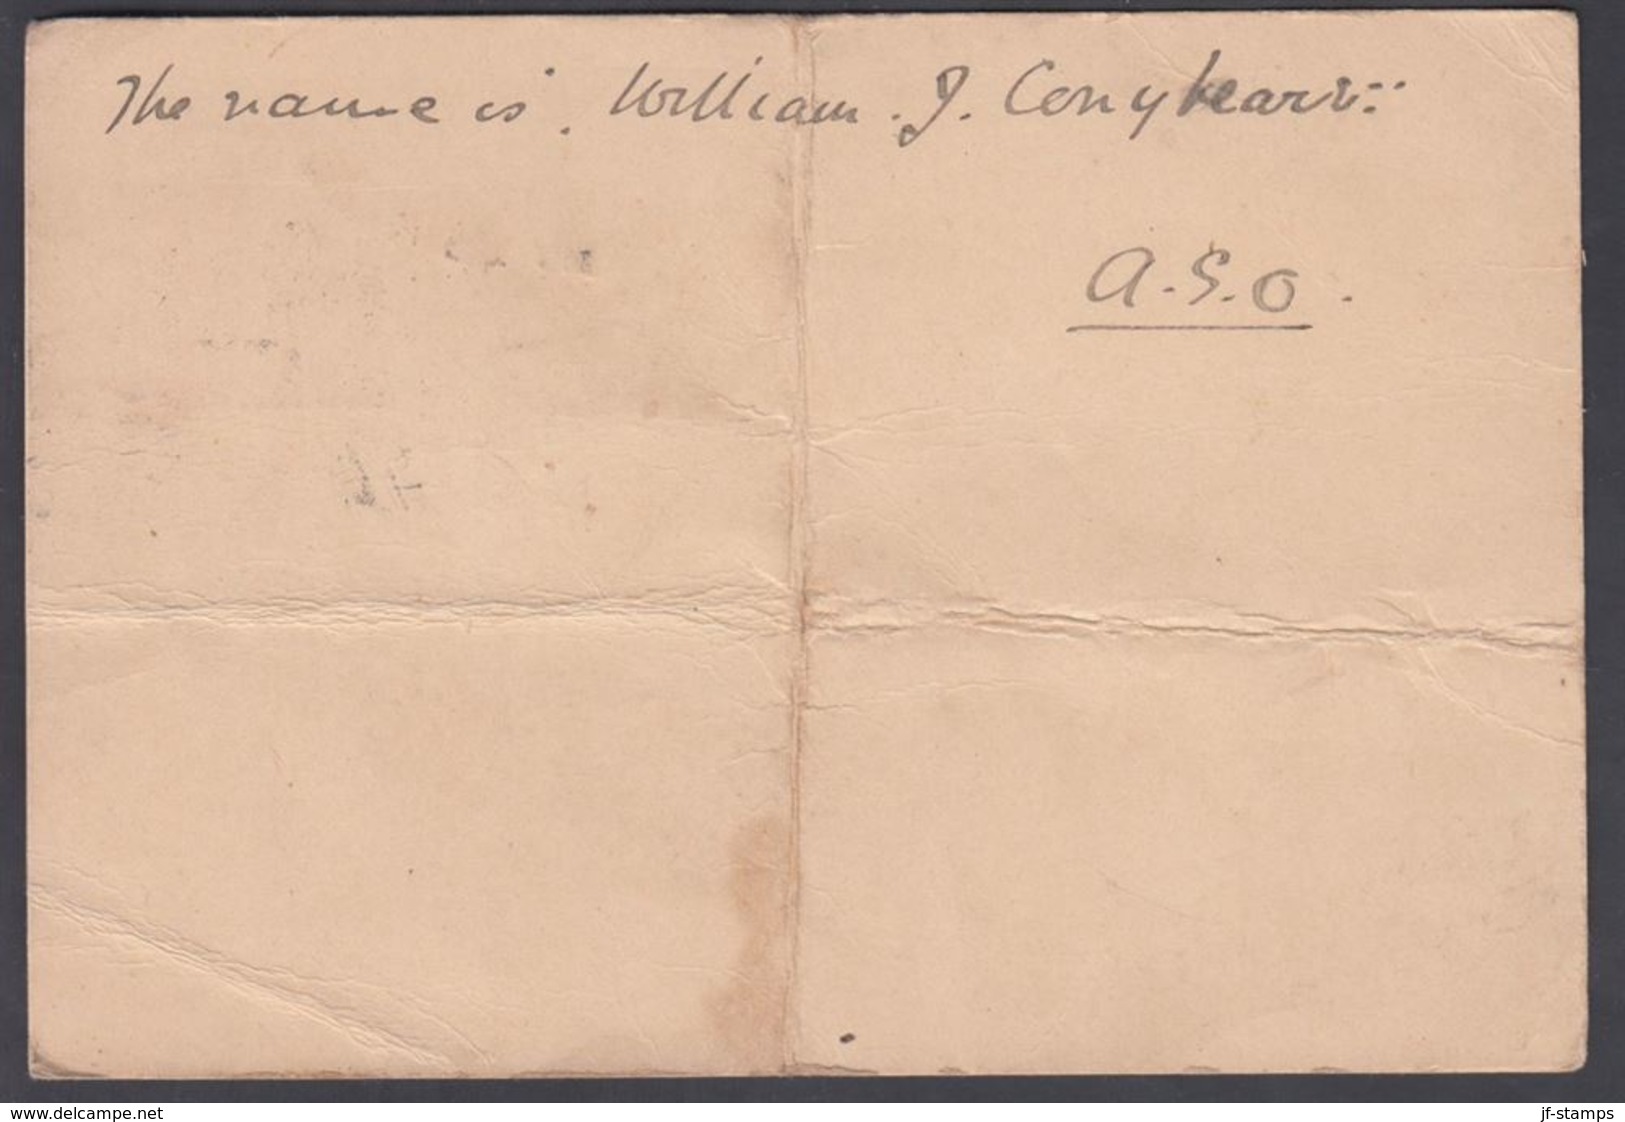 1896. QUEENSLAND AUSTRALIA  ONE PENNY POST CARD VICTORIA. MY 25 96.  () - JF321615 - Brieven En Documenten